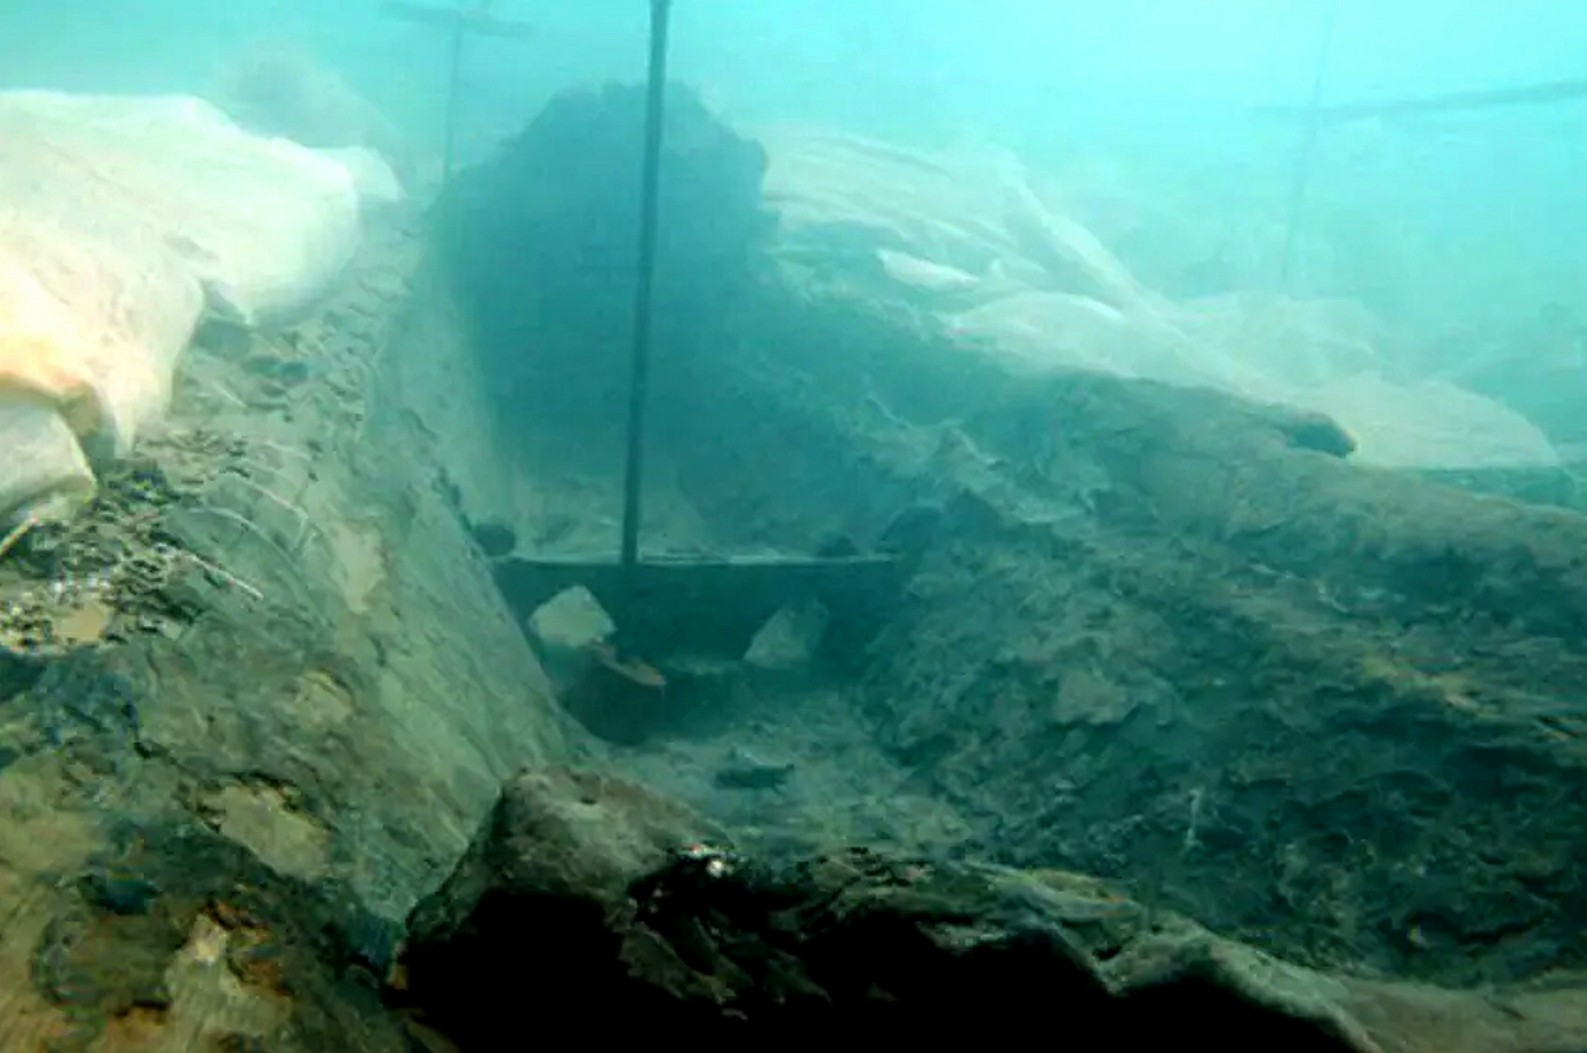 Bangkai kapal berusia 2,600 tahun ditemukan di lepas pantai Sisilia